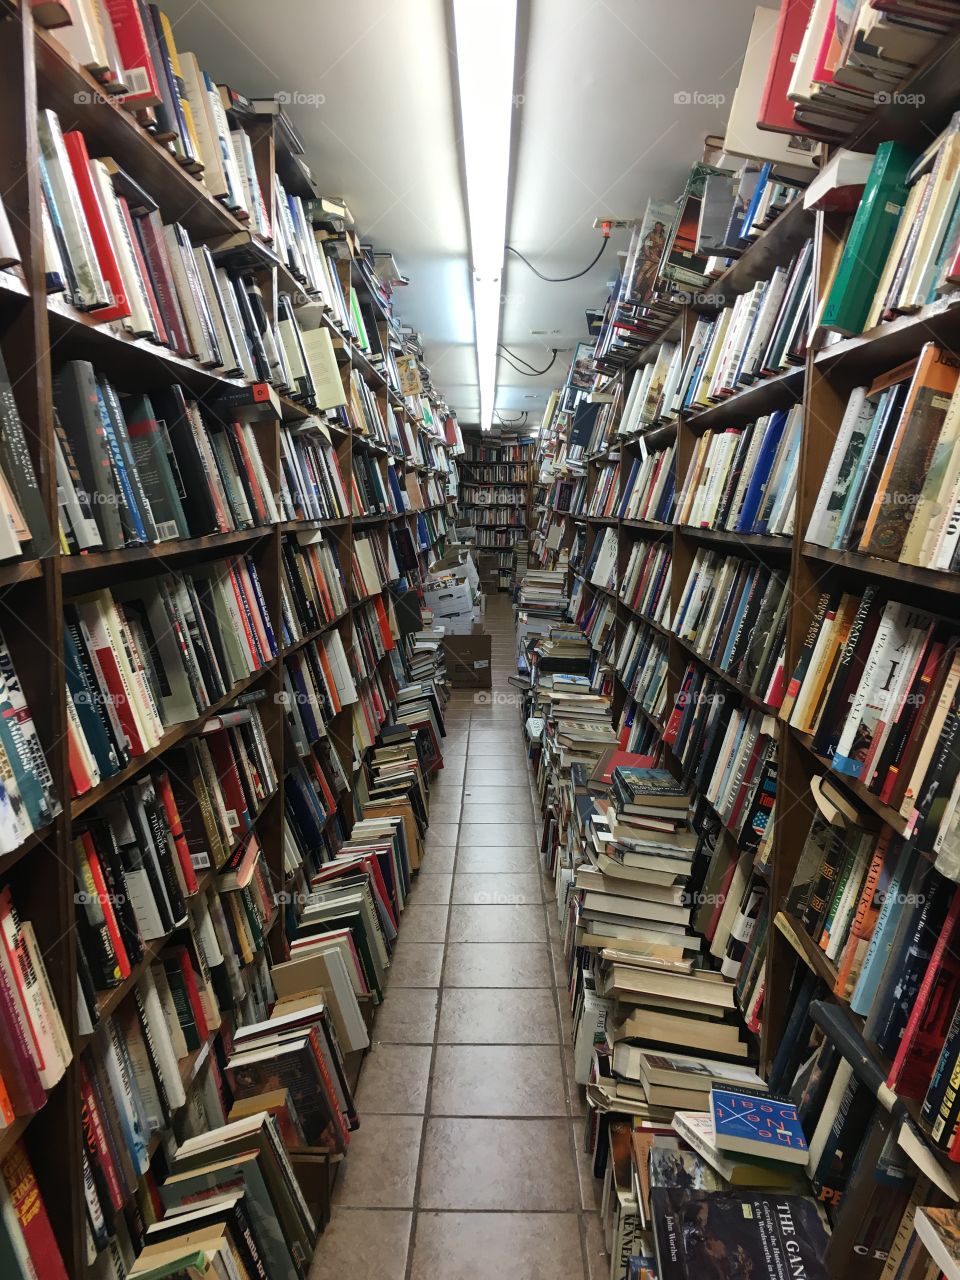 A sea of books